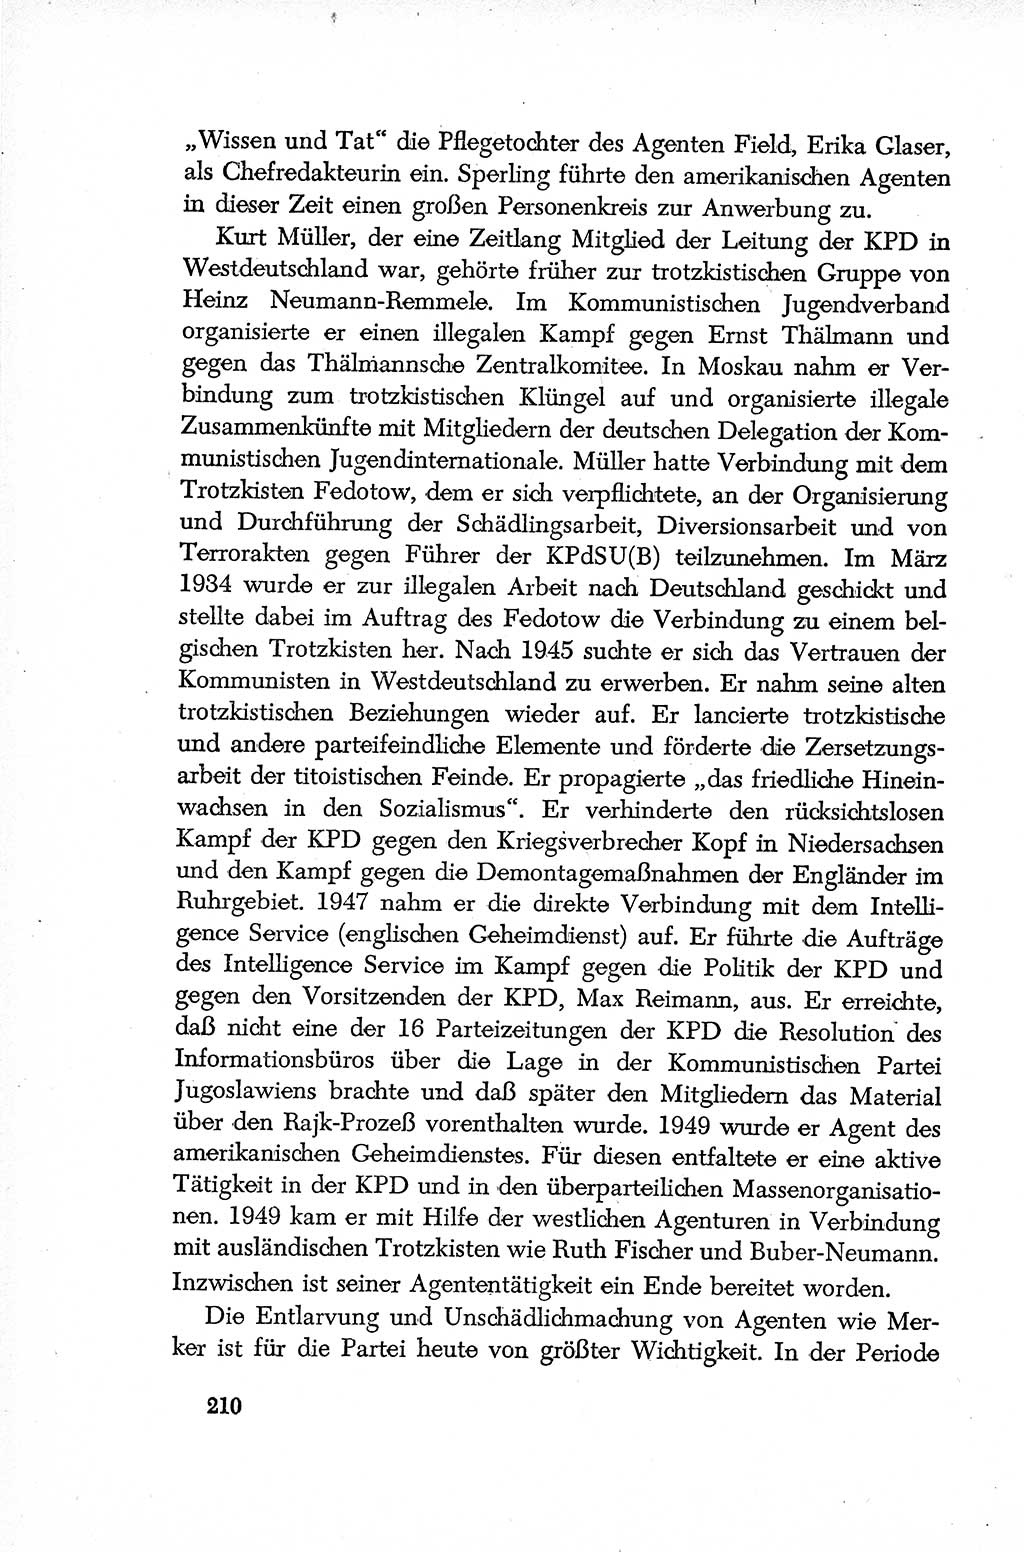 Dokumente der Sozialistischen Einheitspartei Deutschlands (SED) [Deutsche Demokratische Republik (DDR)] 1952-1953, Seite 210 (Dok. SED DDR 1952-1953, S. 210)